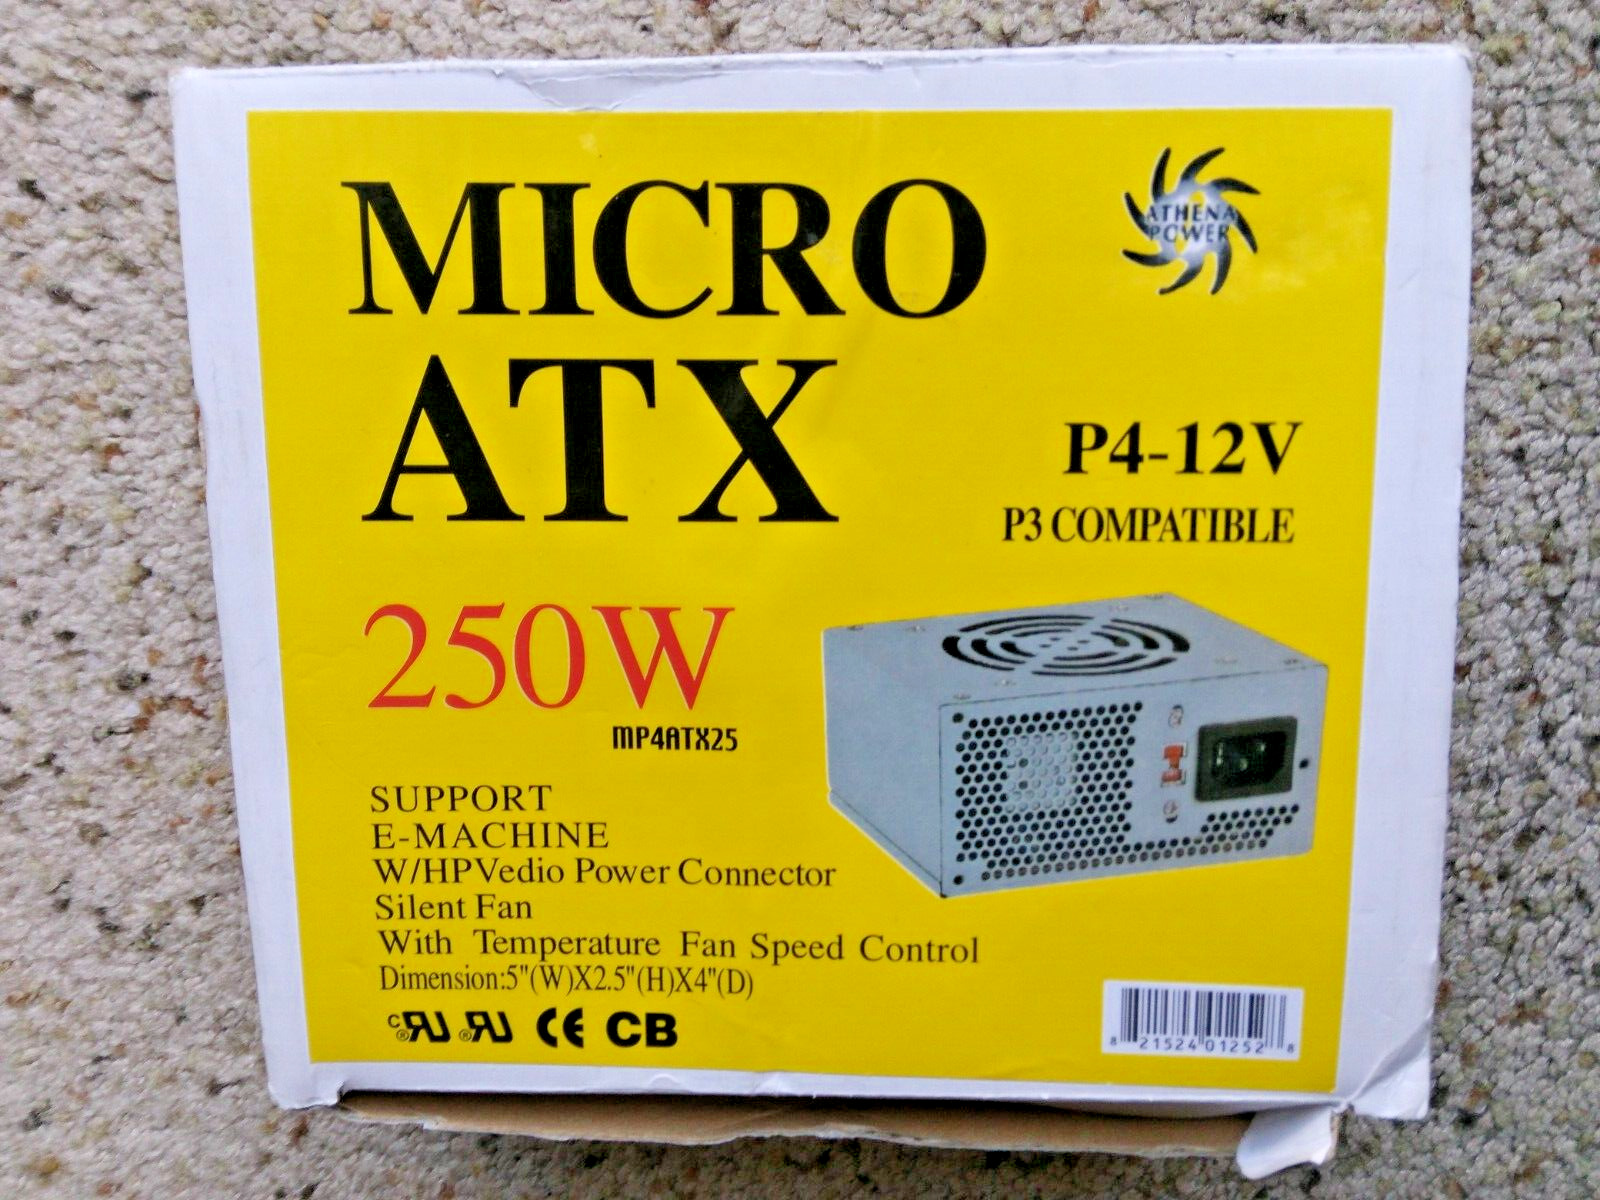 Micro ATX 250W mp4atx25 P4-12V P3 Compatible open box never used